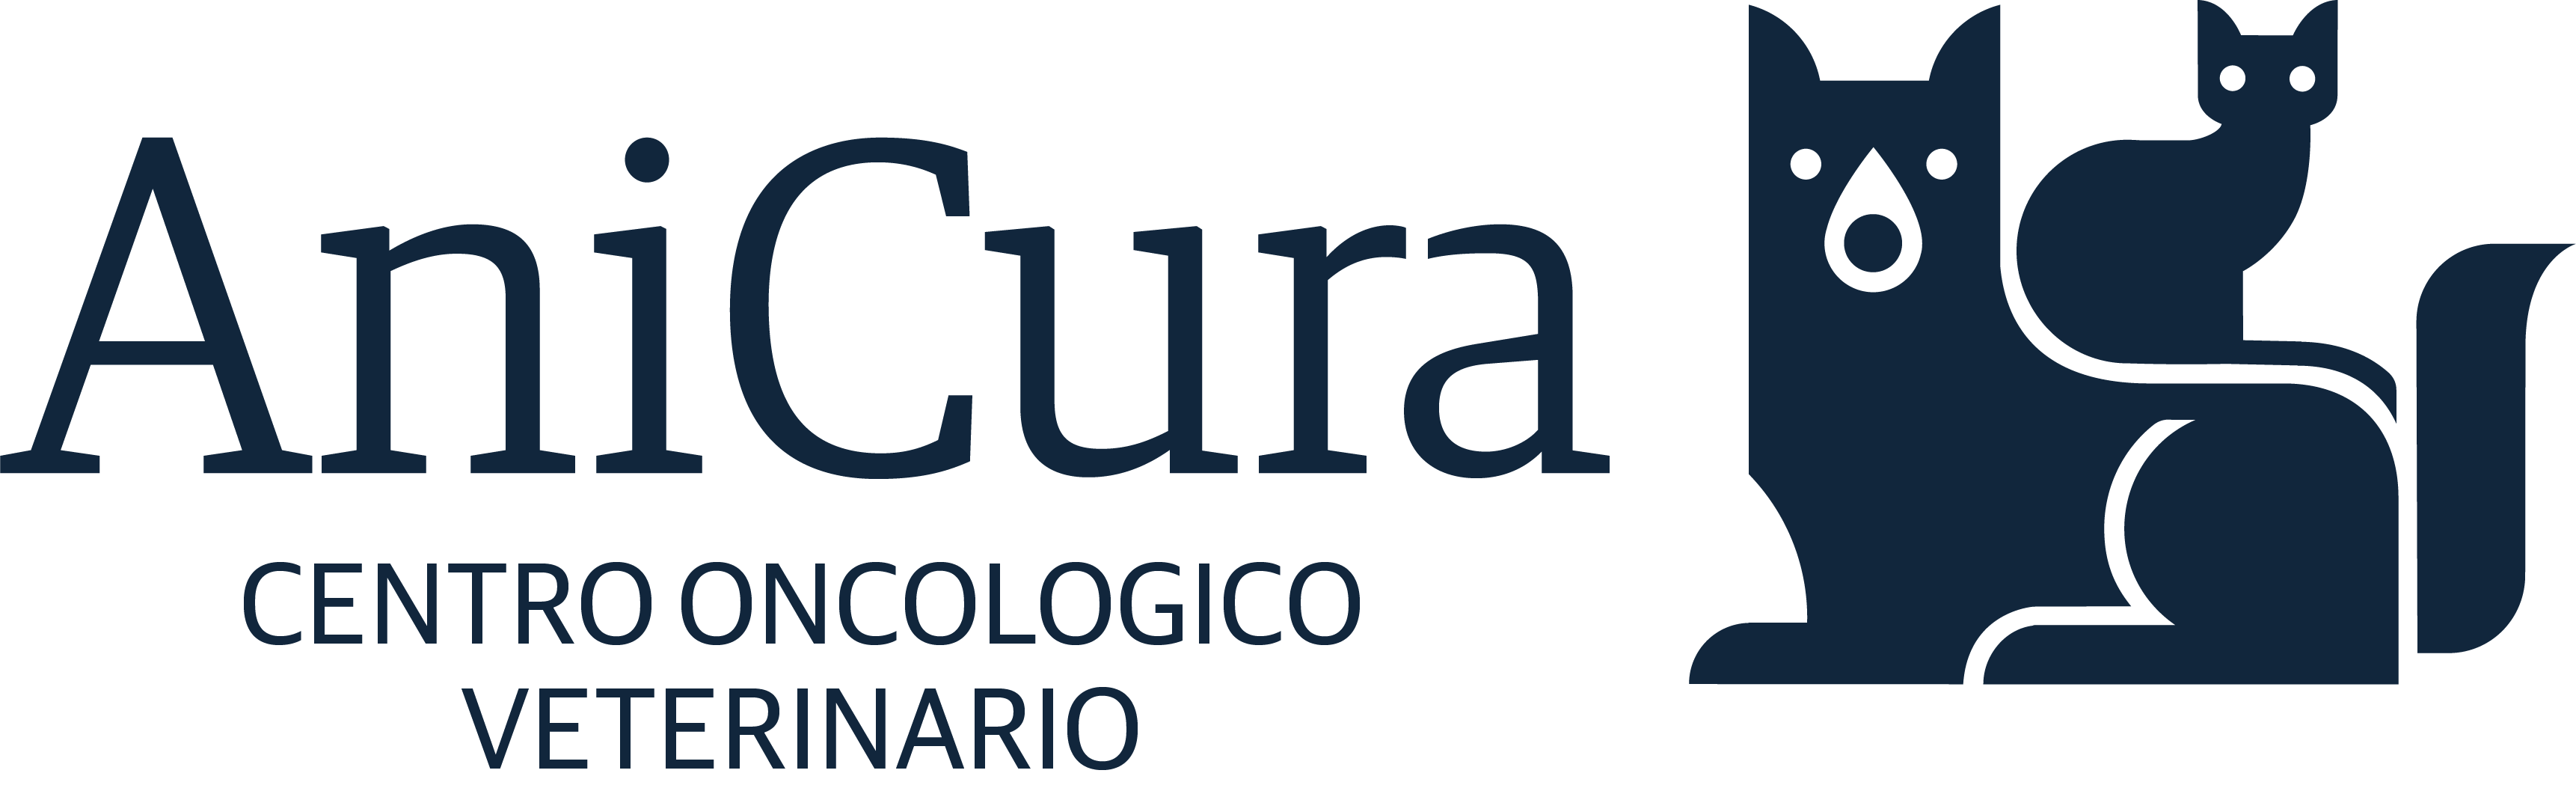 Centro Oncologico Veterinario logo